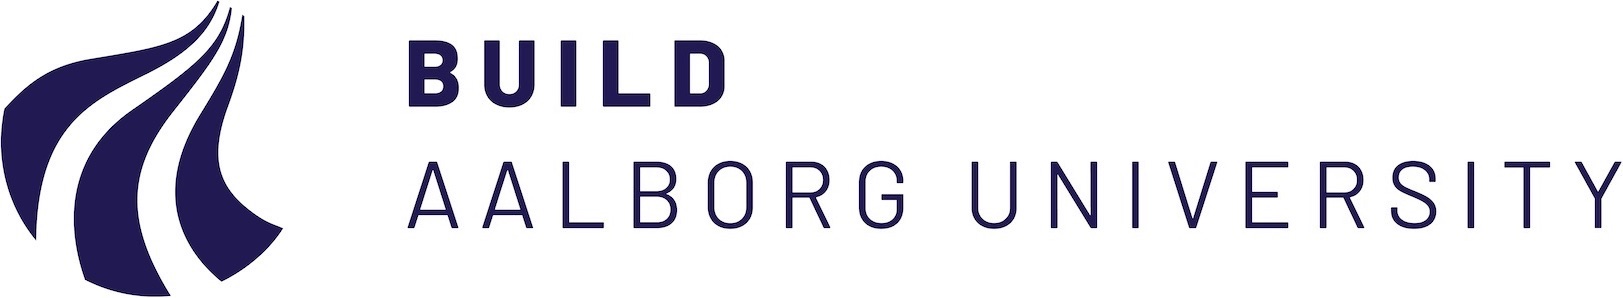 BUILD Aalborg University